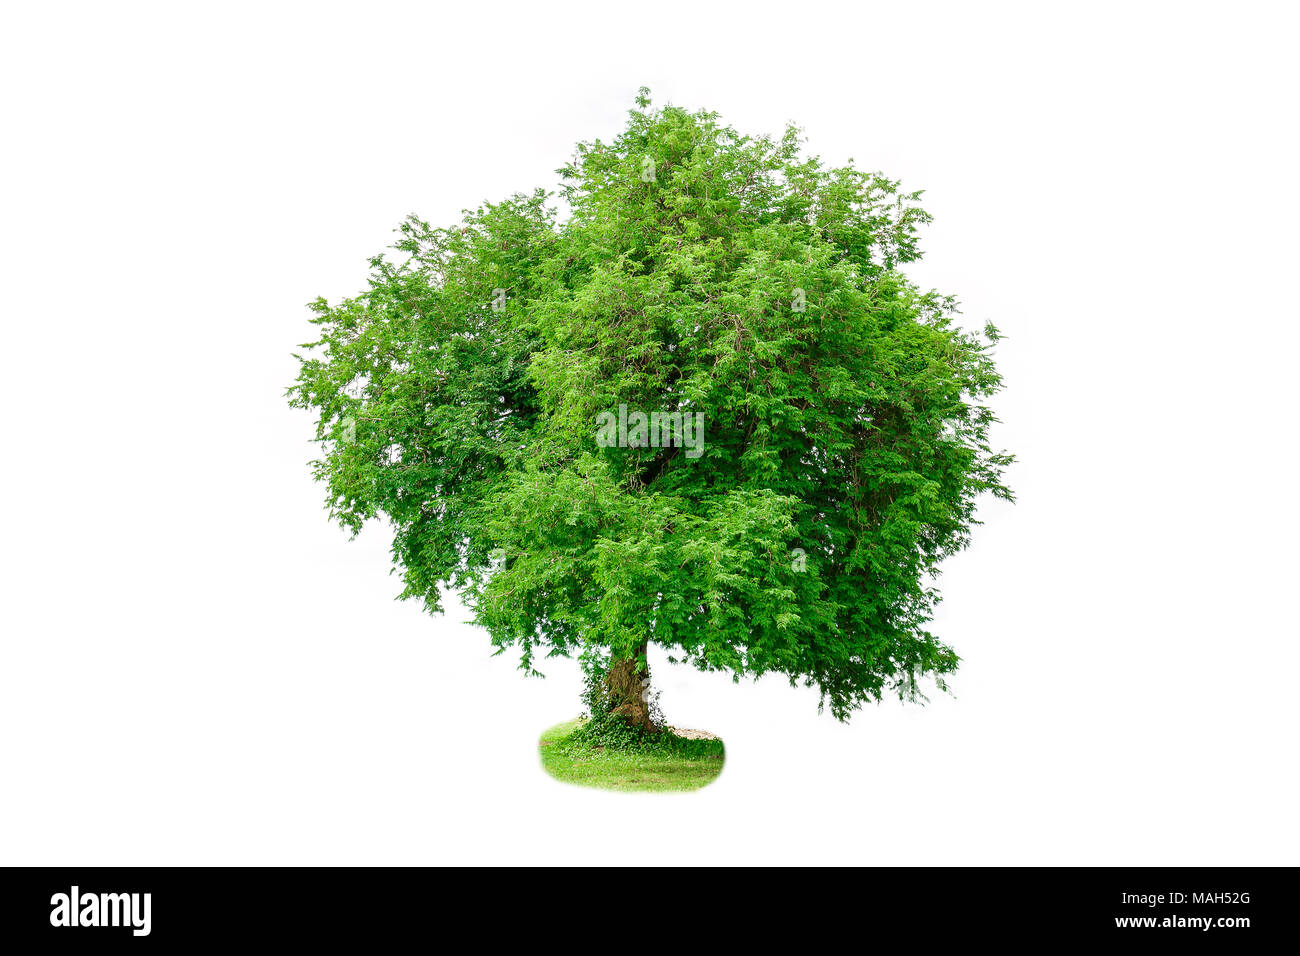 Tamarind tree isolated on white background Stock Photo